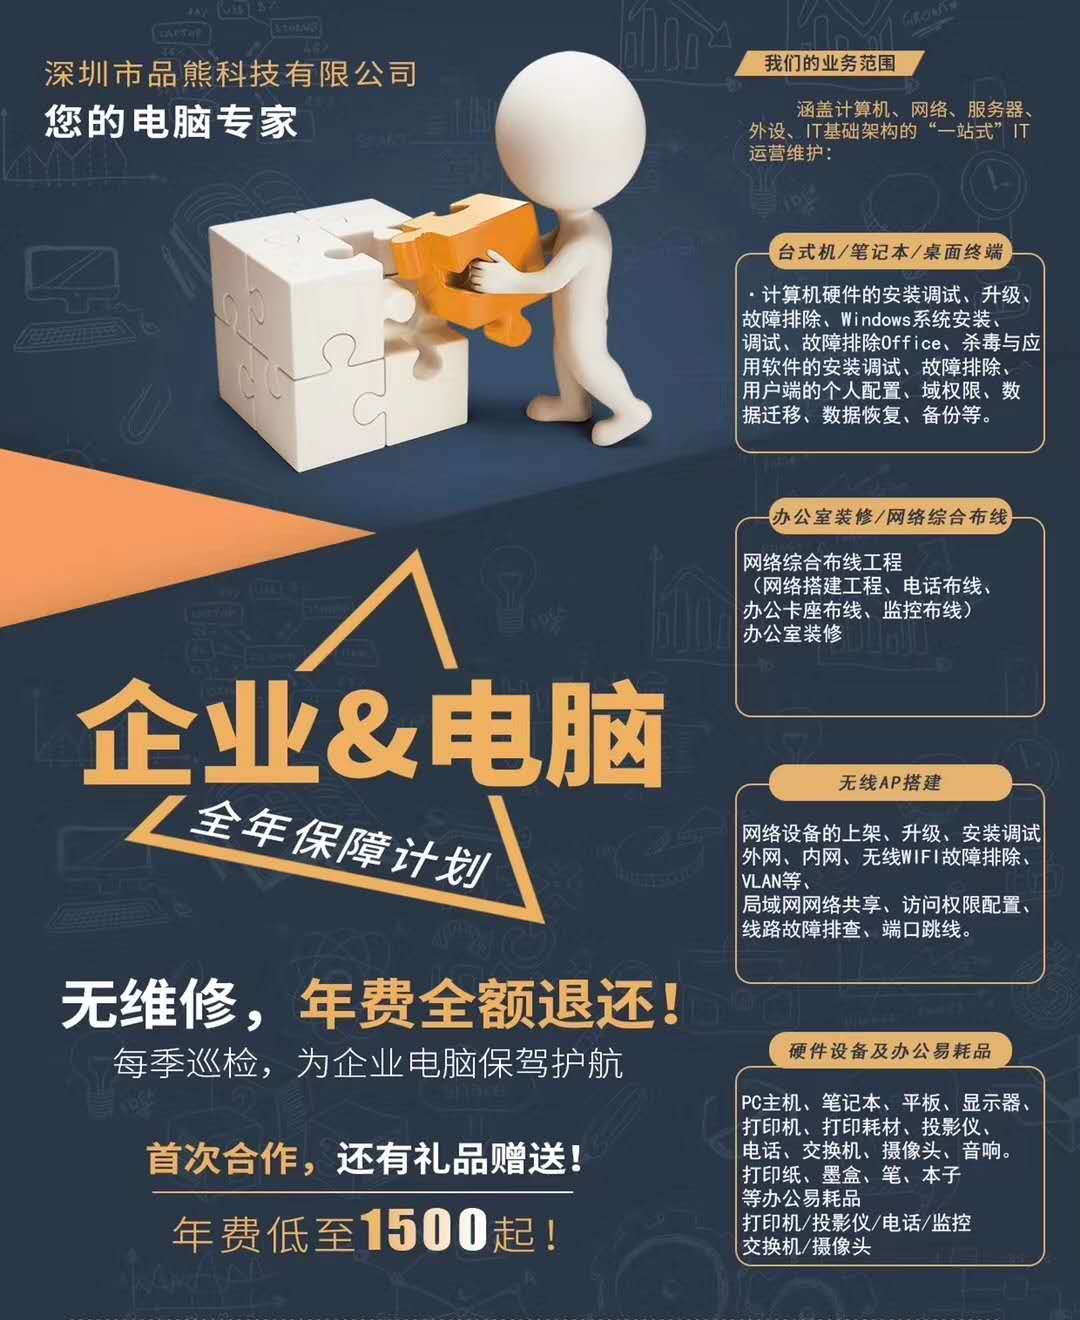 深圳台式机/笔记本/平板批发、组装、租赁、维修、回收另有核心_电脑